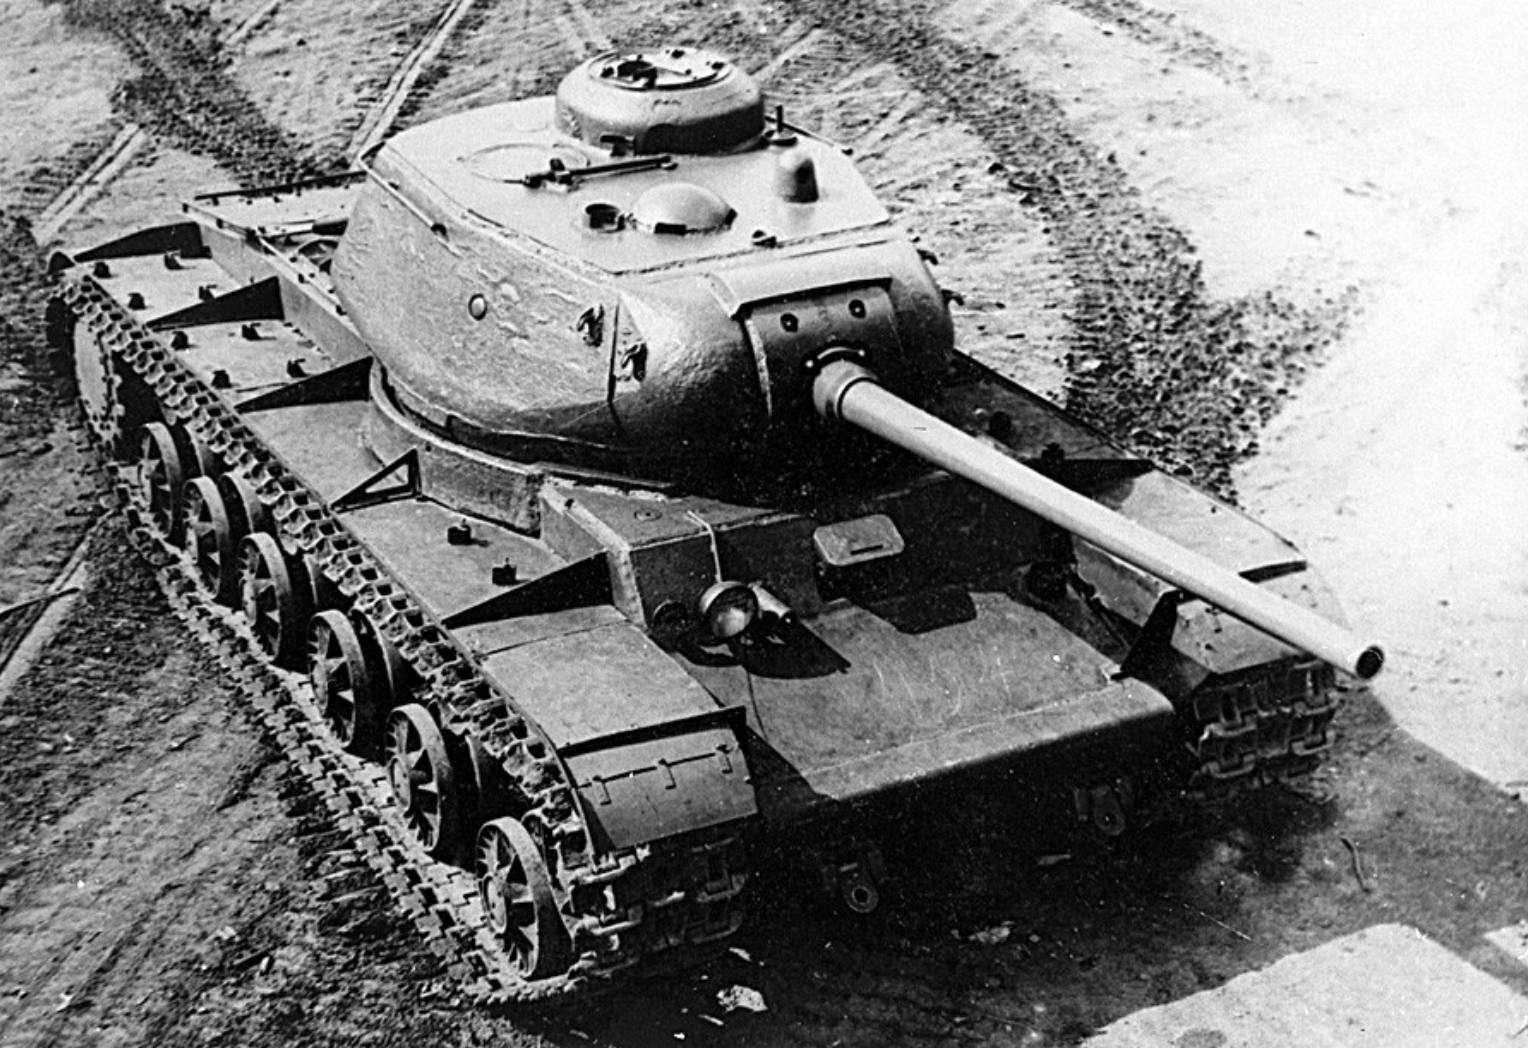 Xe tăng anh hùng chính là những chiếc xe tăng được đánh giá cao về sức mạnh, tốc độ và khả năng chiến đấu. Những chiếc xe này đã vượt qua nhiều trận đánh quyết liệt và góp phần lớn trong chiến thắng của đất nước.